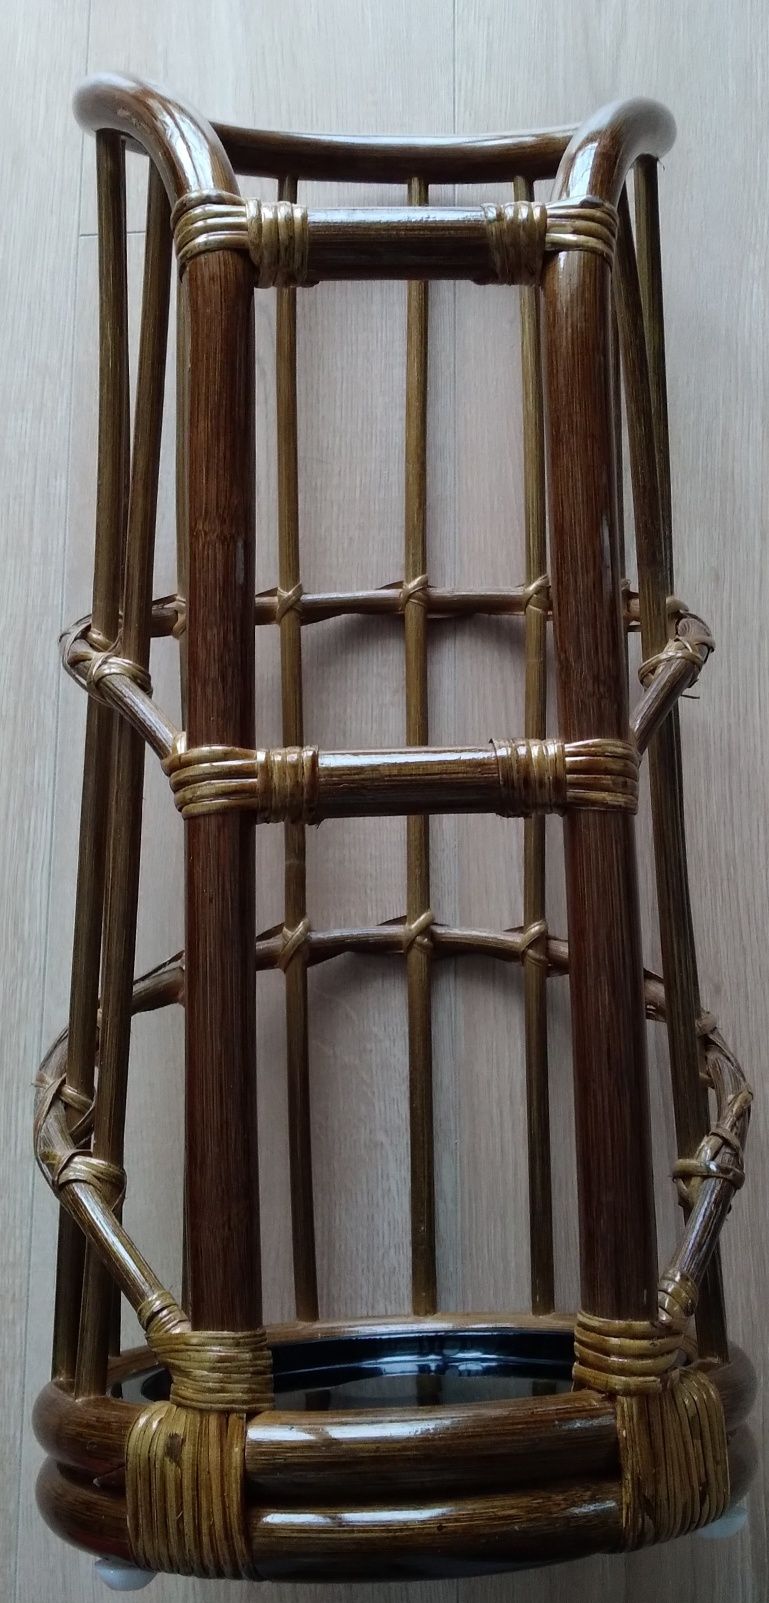 Stojak bambusowy oliwkowy Indonezja